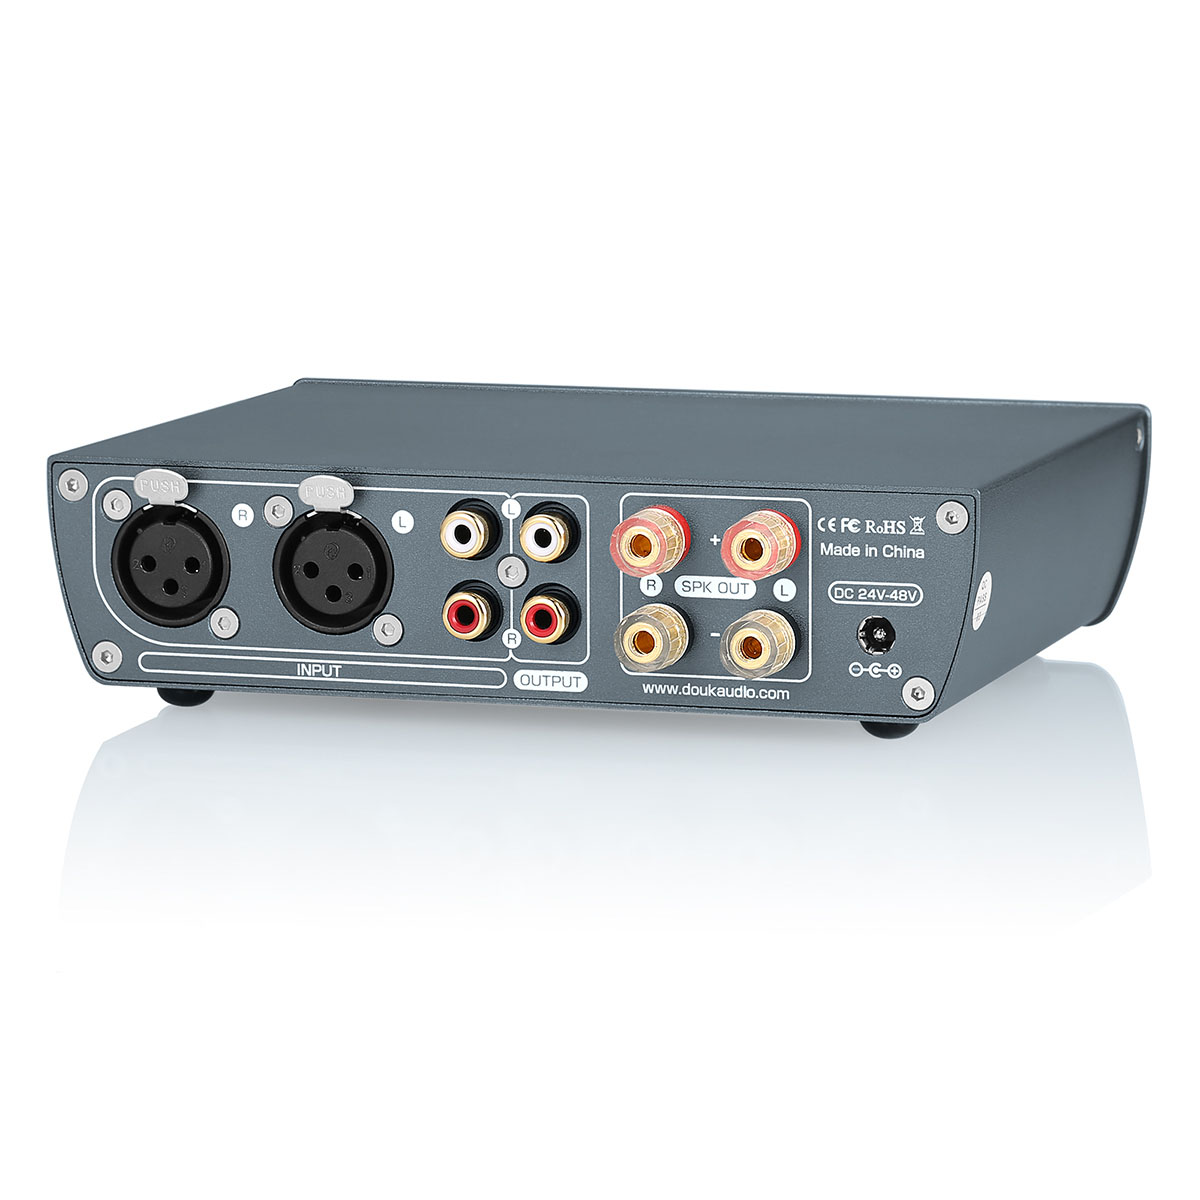 Nobsound Douk Audio H7 PRO TPA3255 デジタルアンプ VUメーター付き 300W ホームステレオパワーアンプ